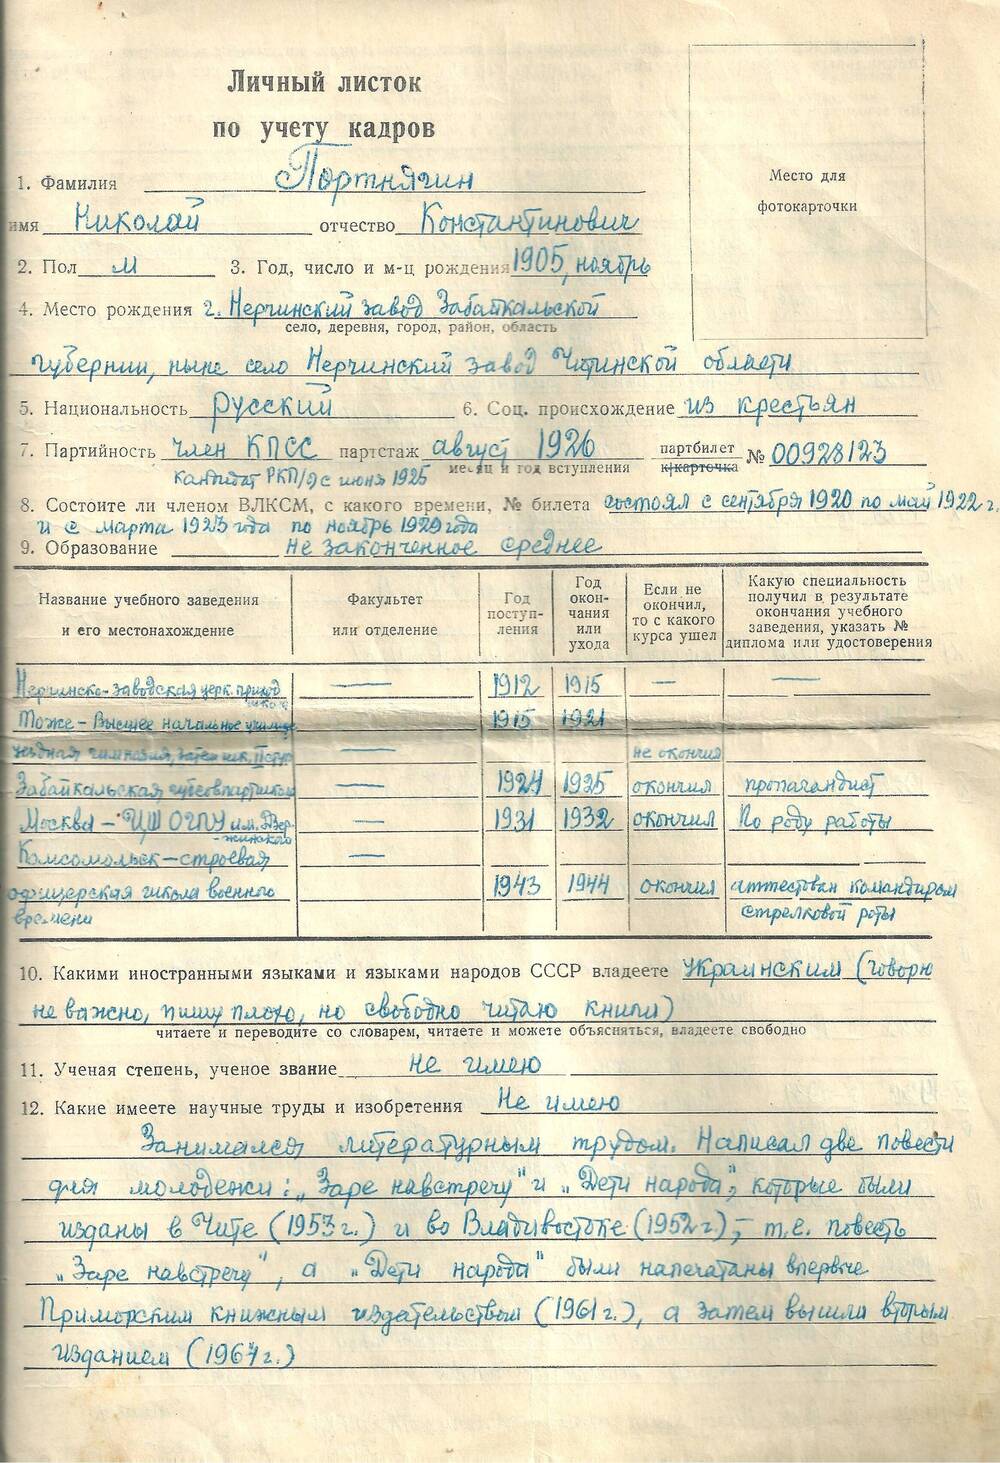 Личный листок по учету кадров Портнягина Николая Константиновича